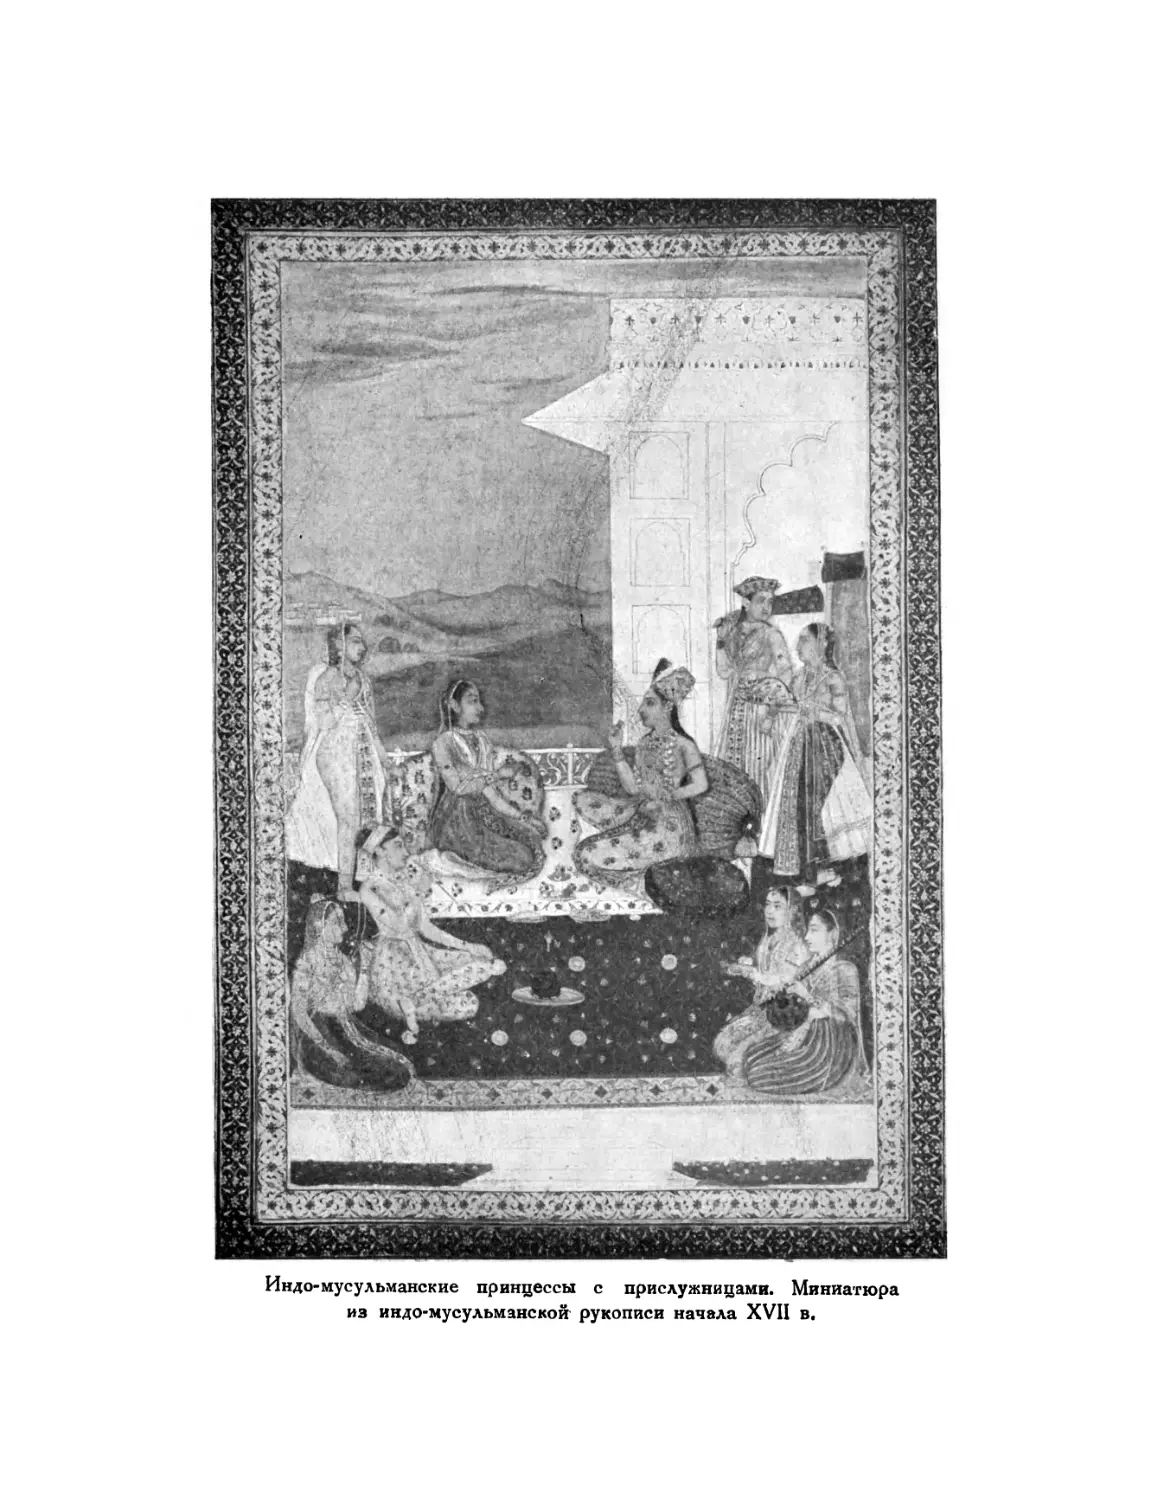 Вклейка. Индо-мусульманские принцессы с прислужницами. Миниатюра из индо-мусульманской рукописи начала XVII в.